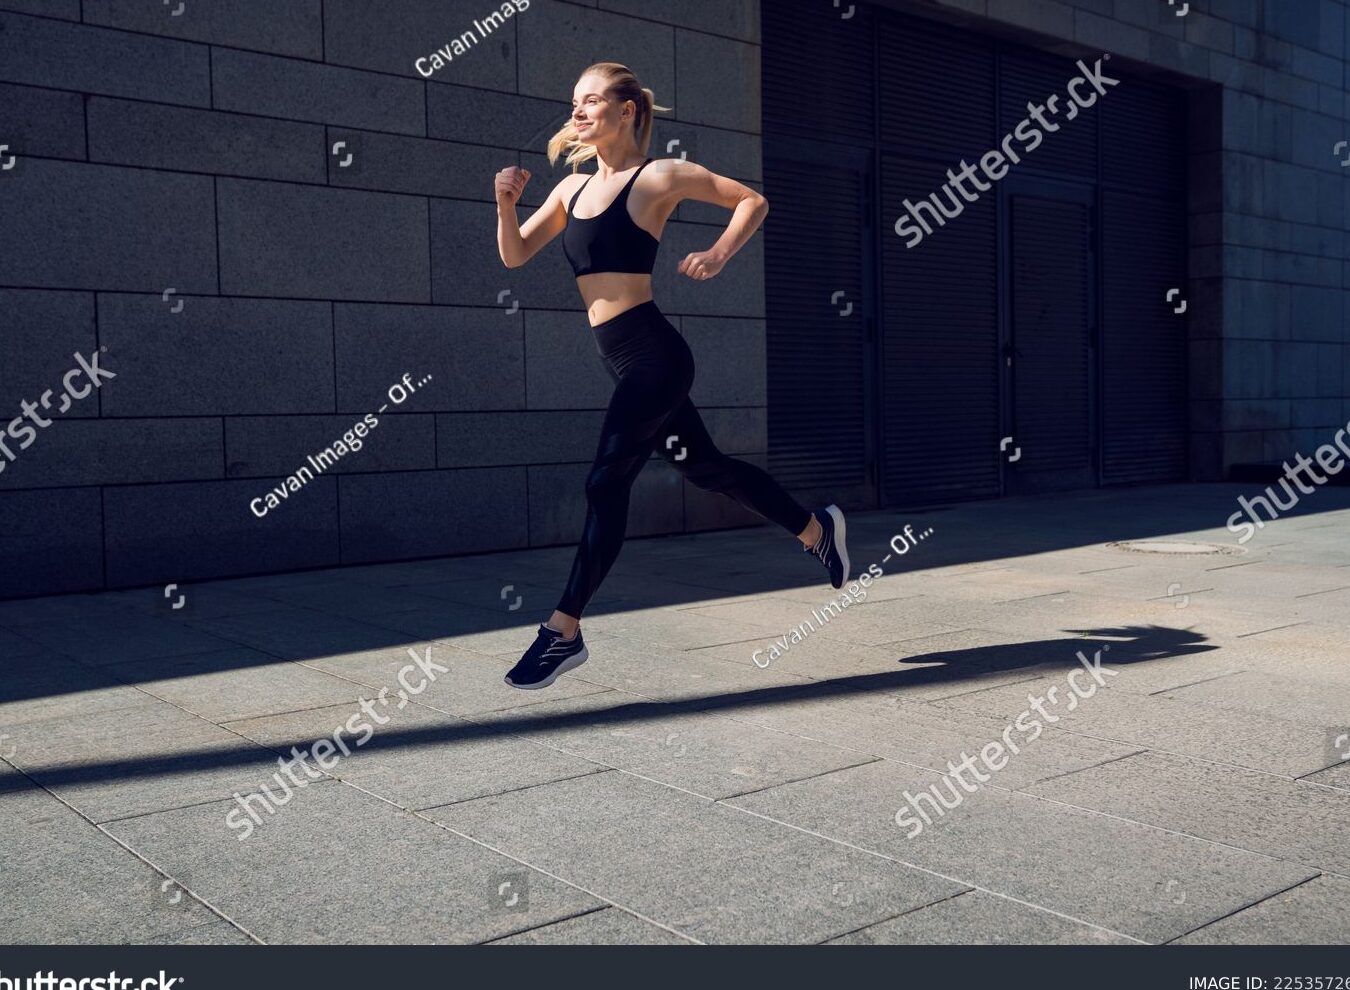 Fotografía de alguien corriendo: La belleza del movimiento.